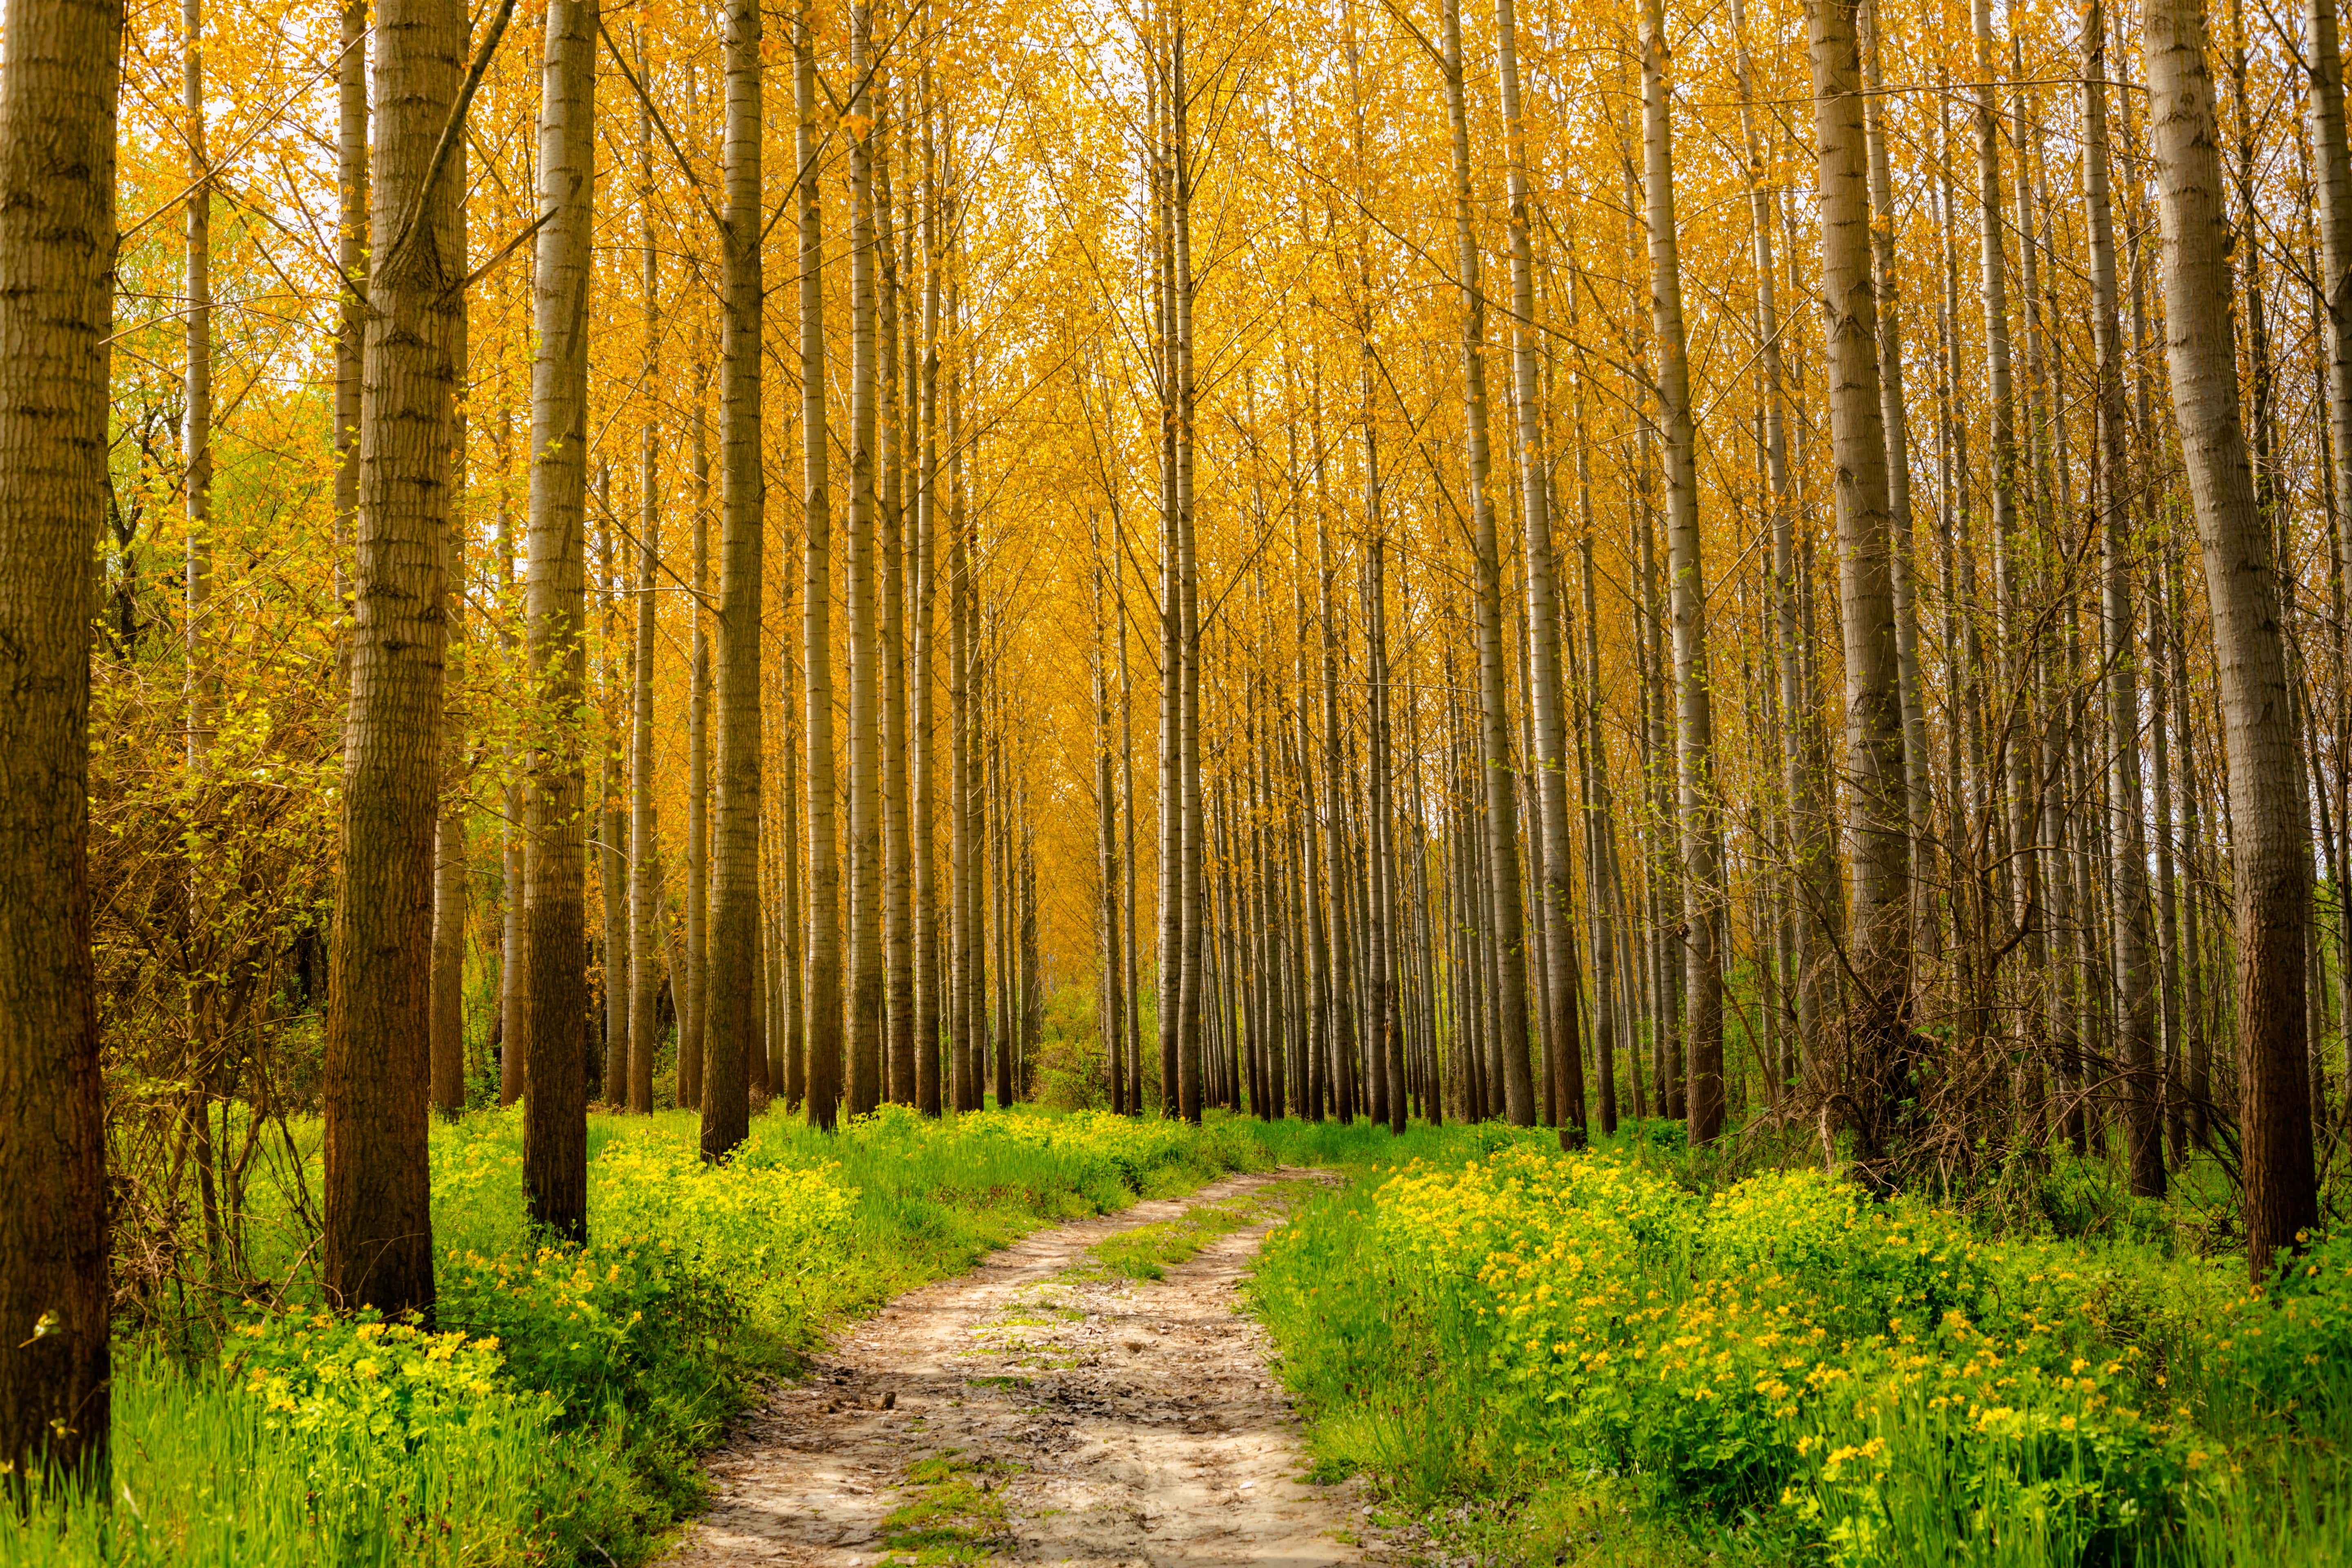 Hình ảnh miễn phí: con đường rừng, Đường rừng, Sunny, cây, cảnh quan, rừng, Poplar, mùa thu, thiên nhiên, lá